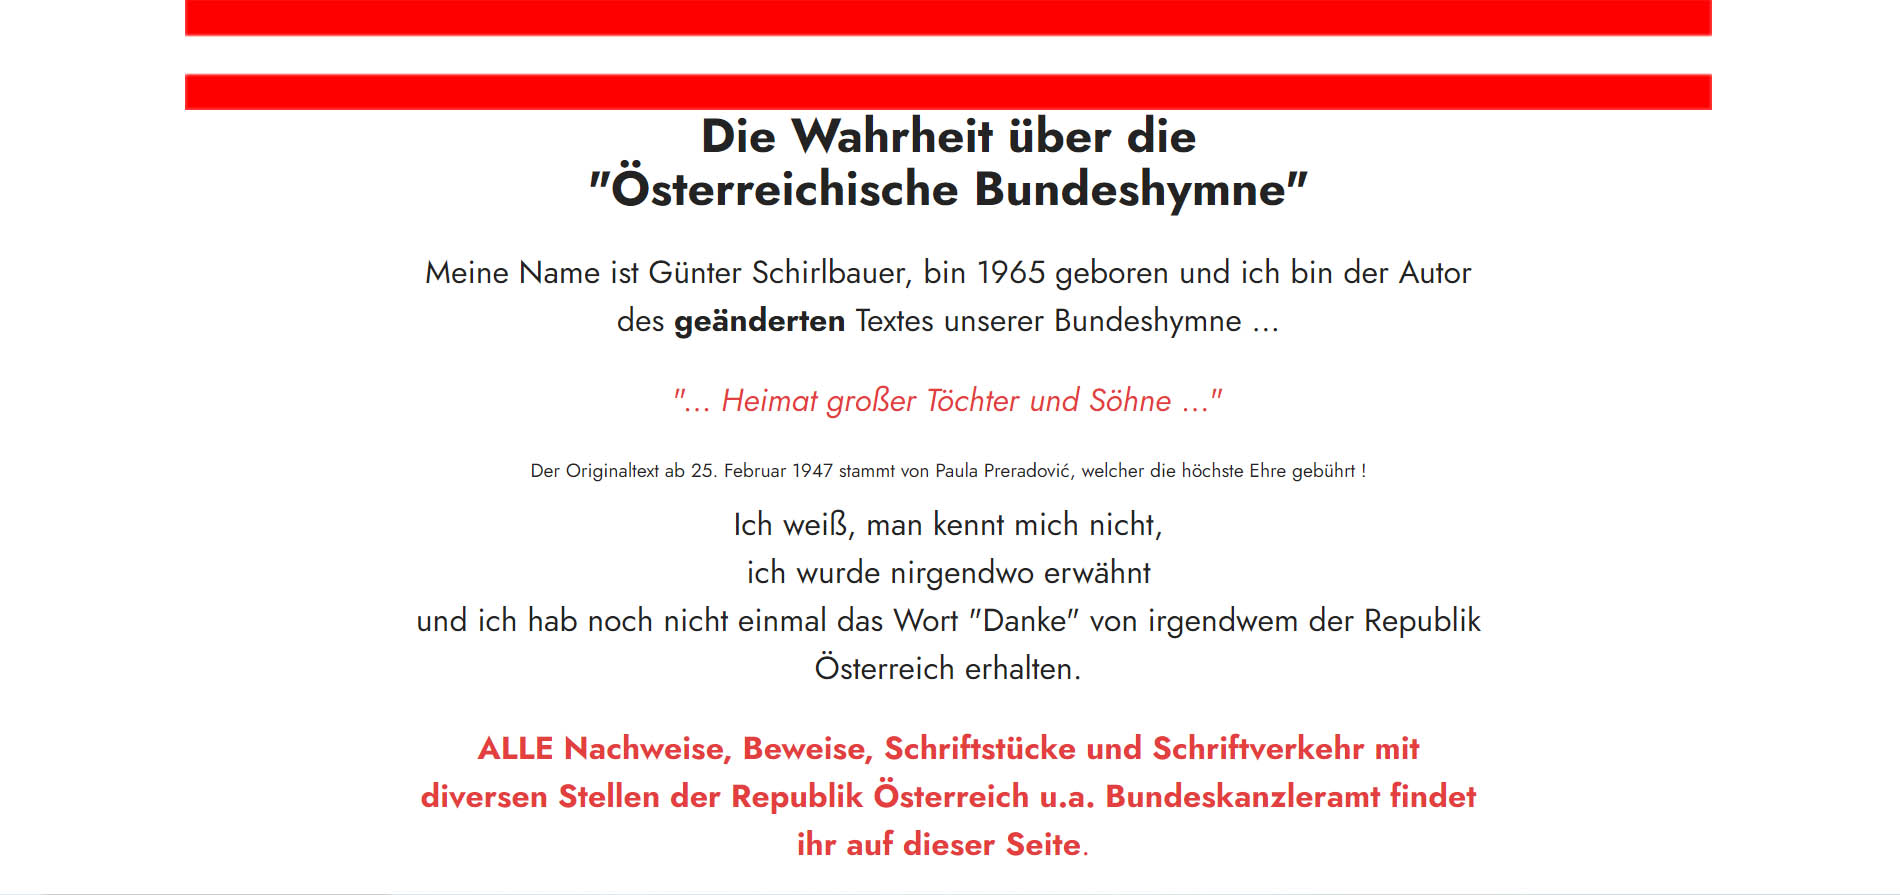 Die Wahrheit über die Österreichische Bundeshymne, Österreichische Bundeshymne, Bundeshymne Österreich, Bundeshymne, Österreich, Schirlbauer